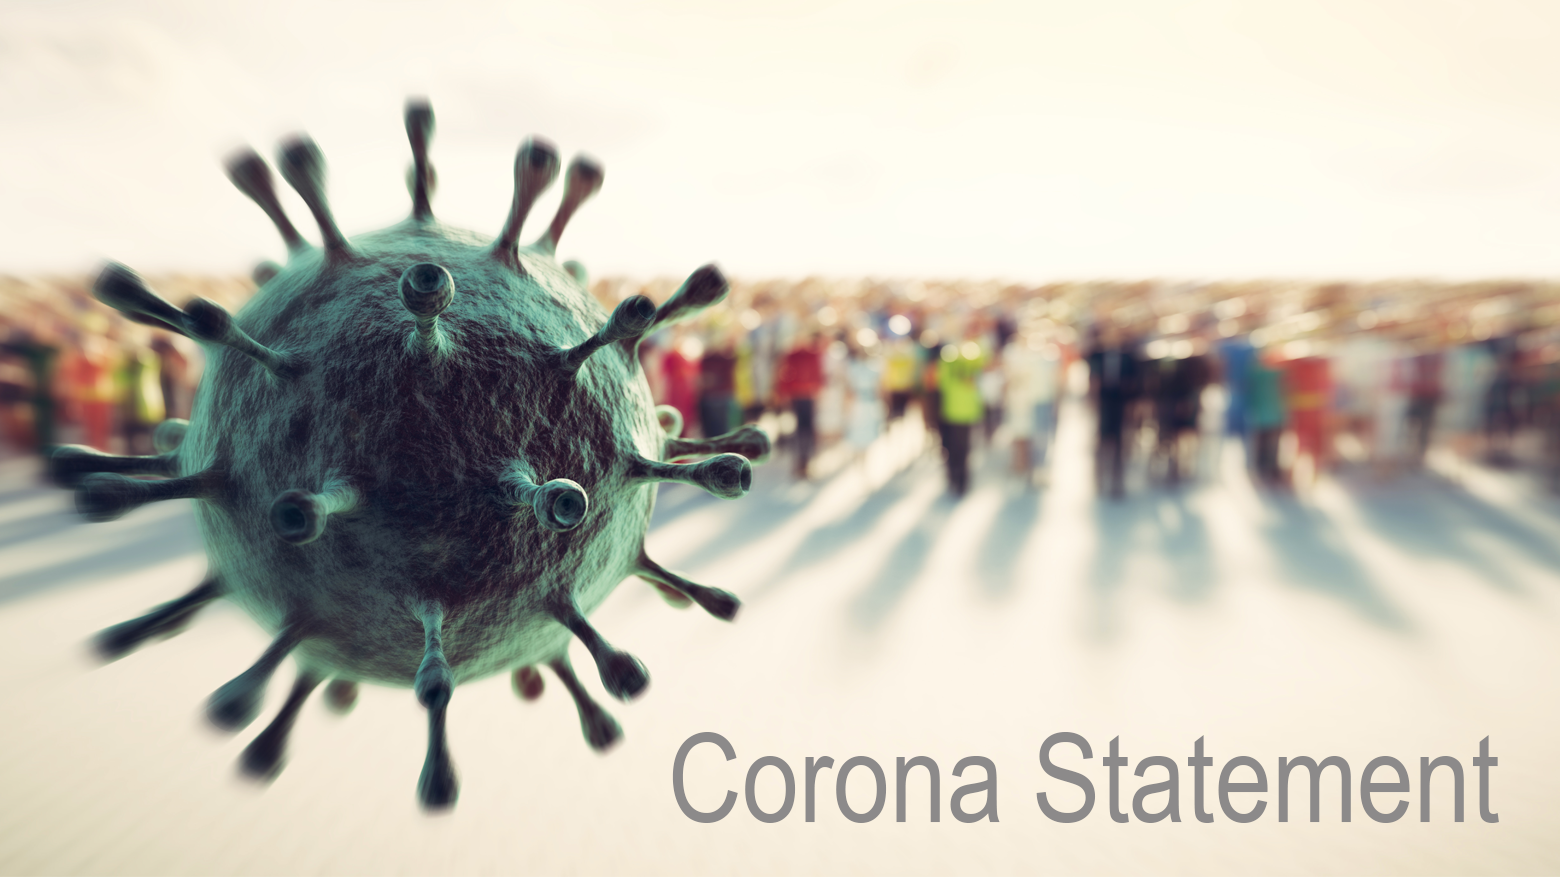 Coronavirus statement